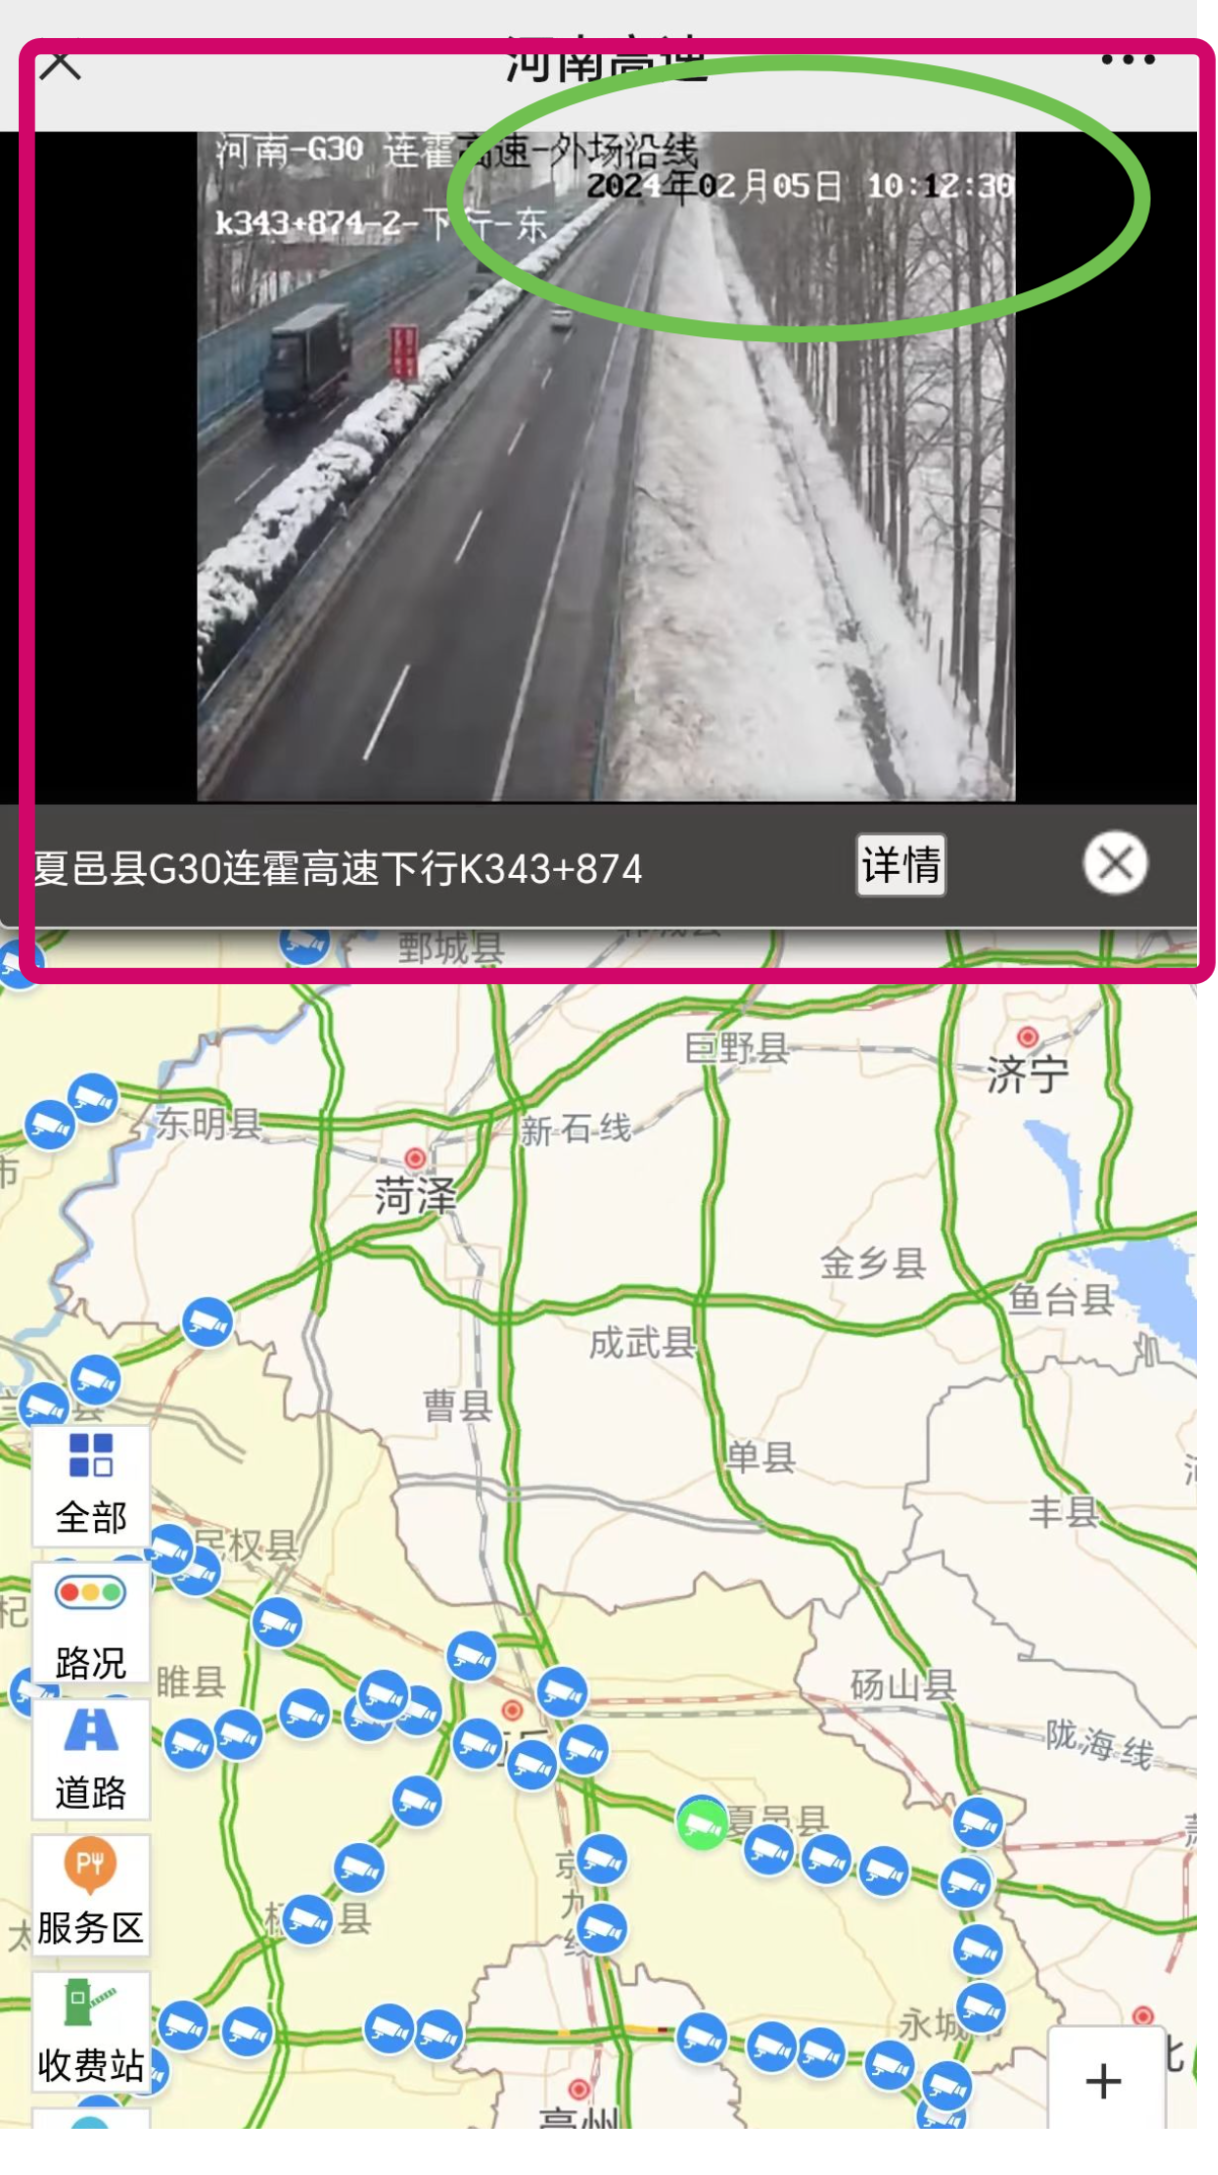 春节回家自驾车全国高速实时路况监控查询随着中国交通基础设施的快速